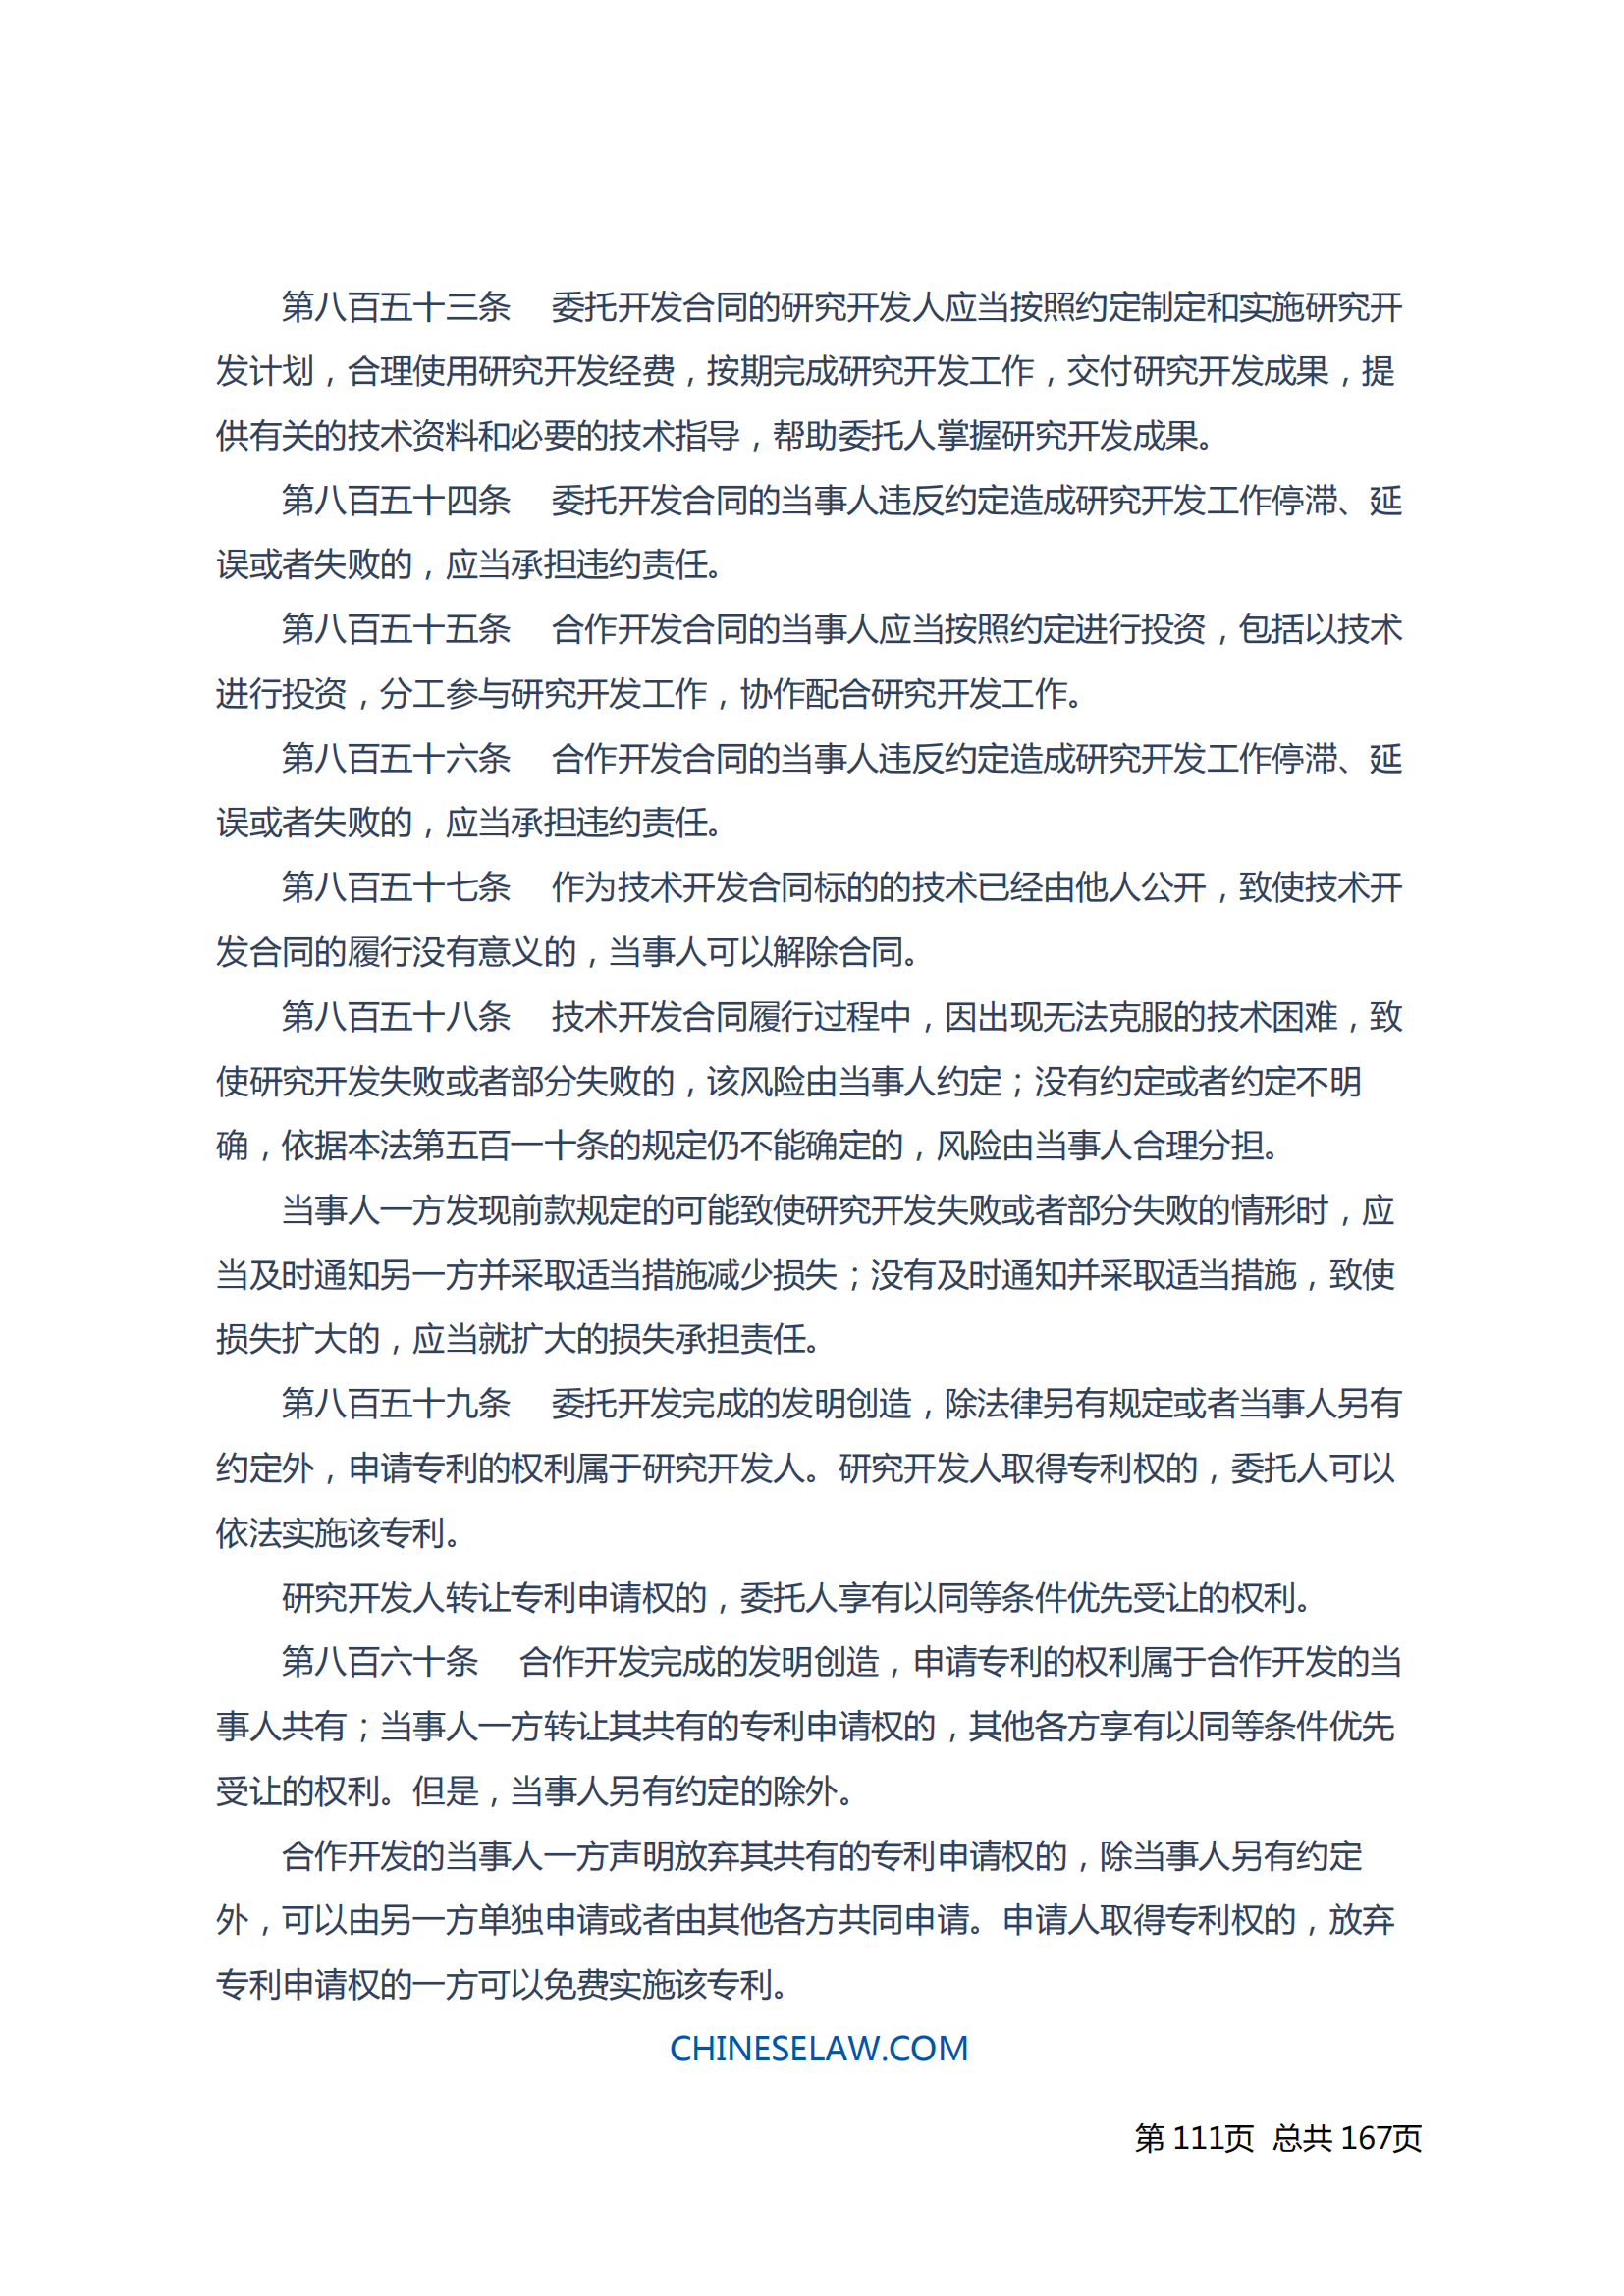 中华人民共和国民法典_110